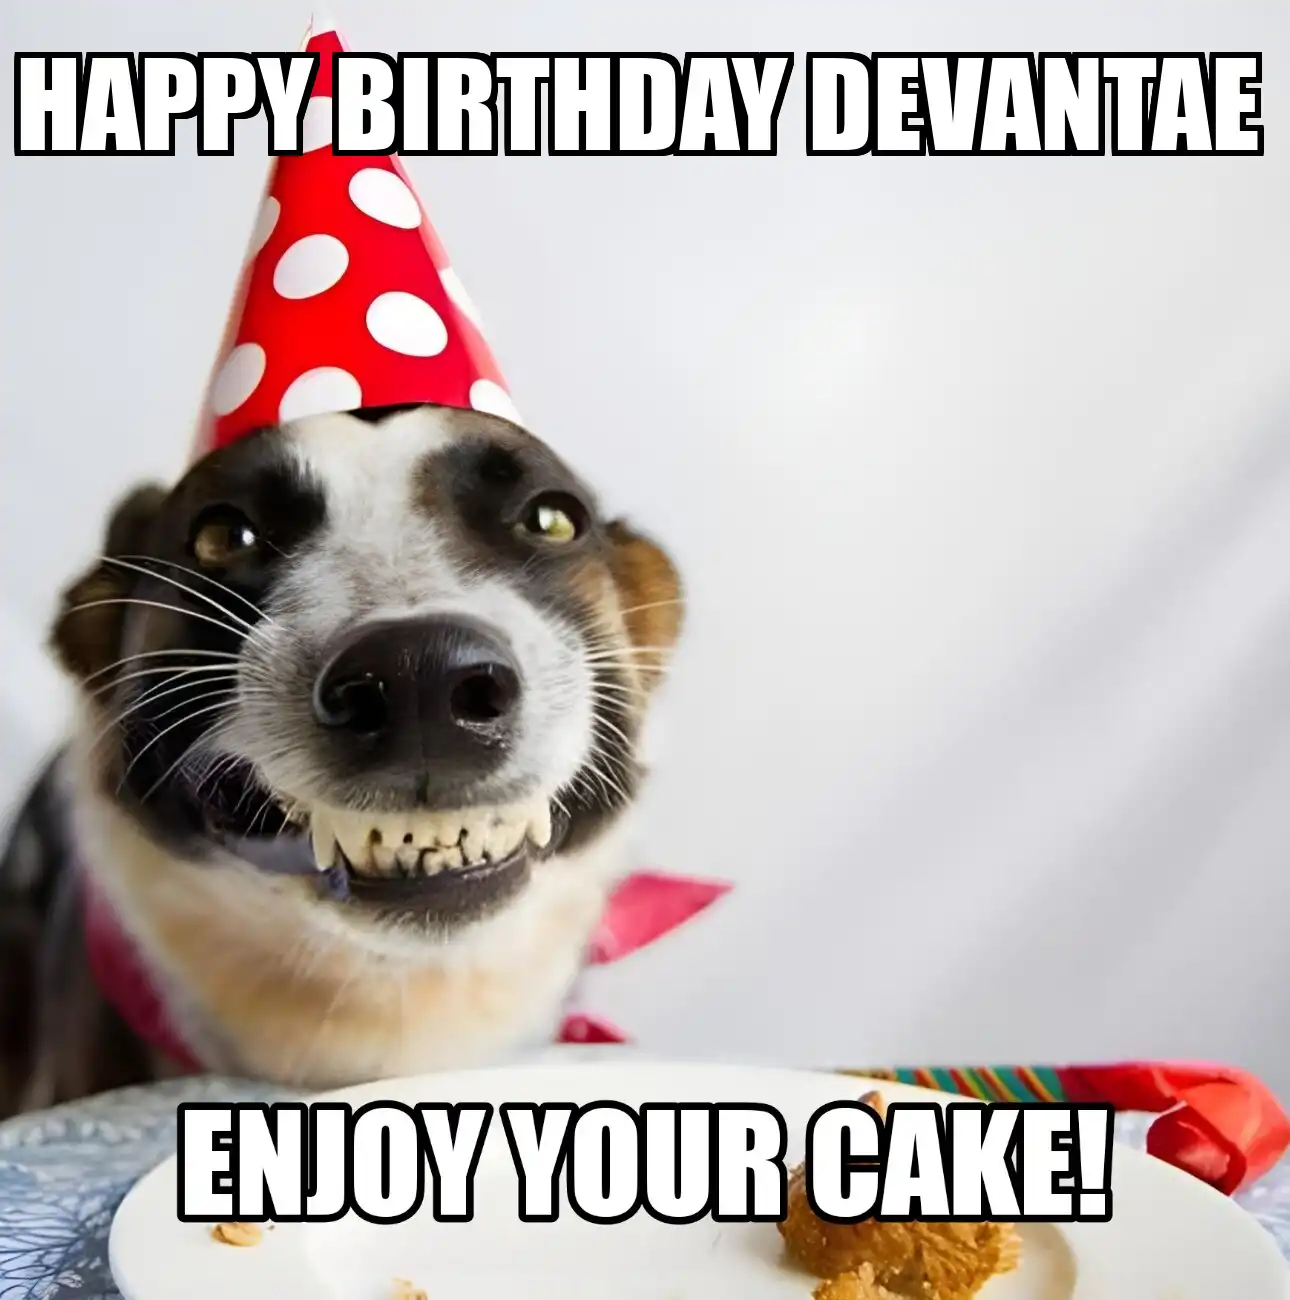 Happy Birthday Devantae Enjoy Your Cake Dog Meme